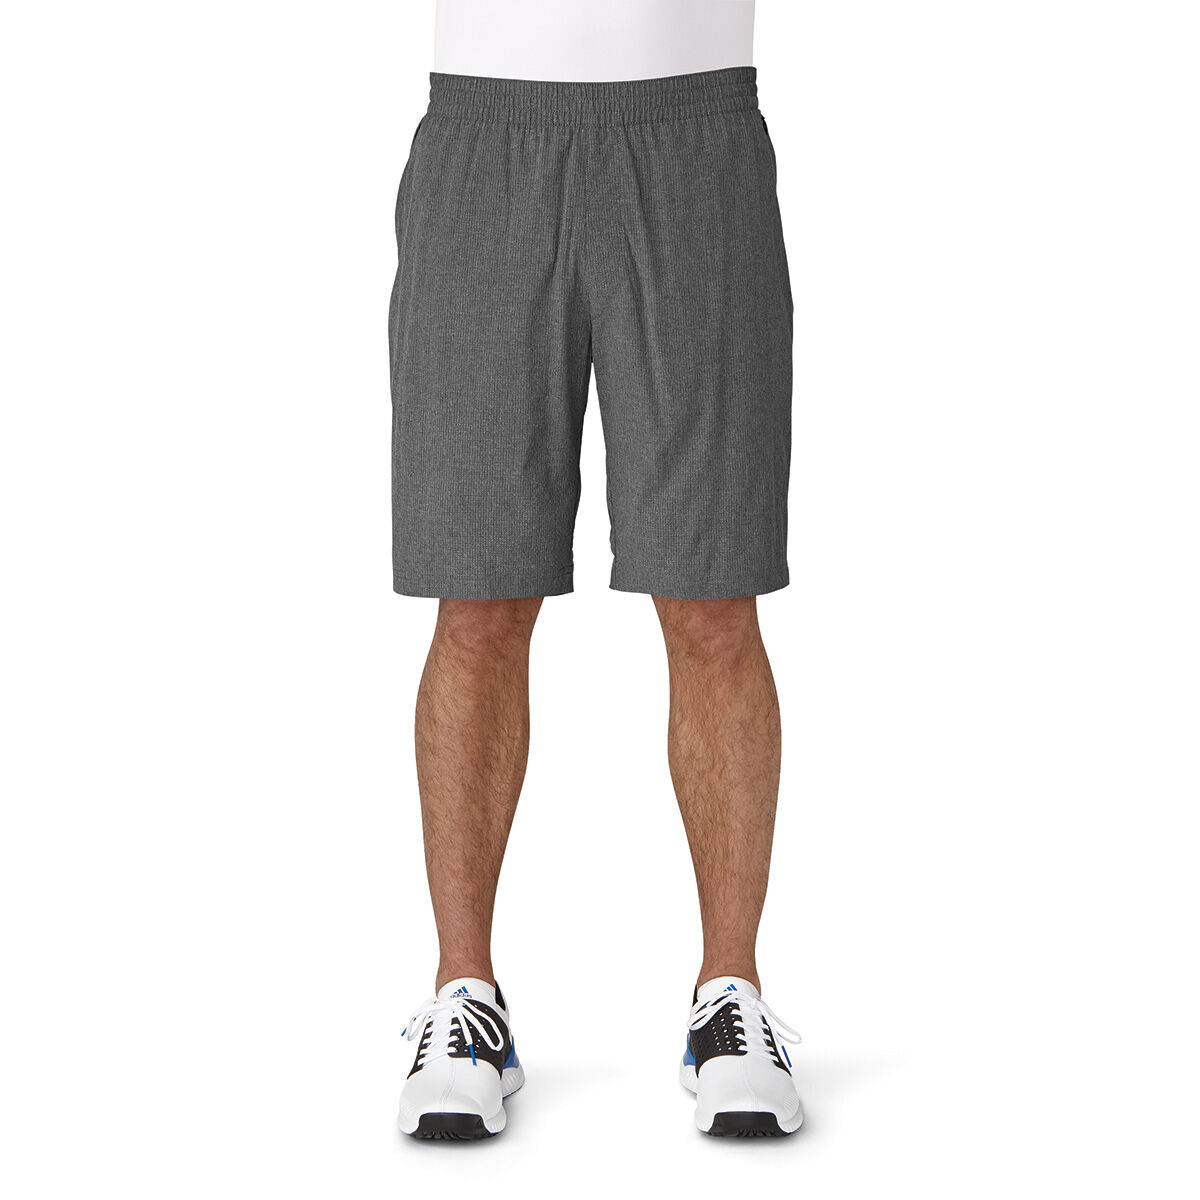 adidas range shorts